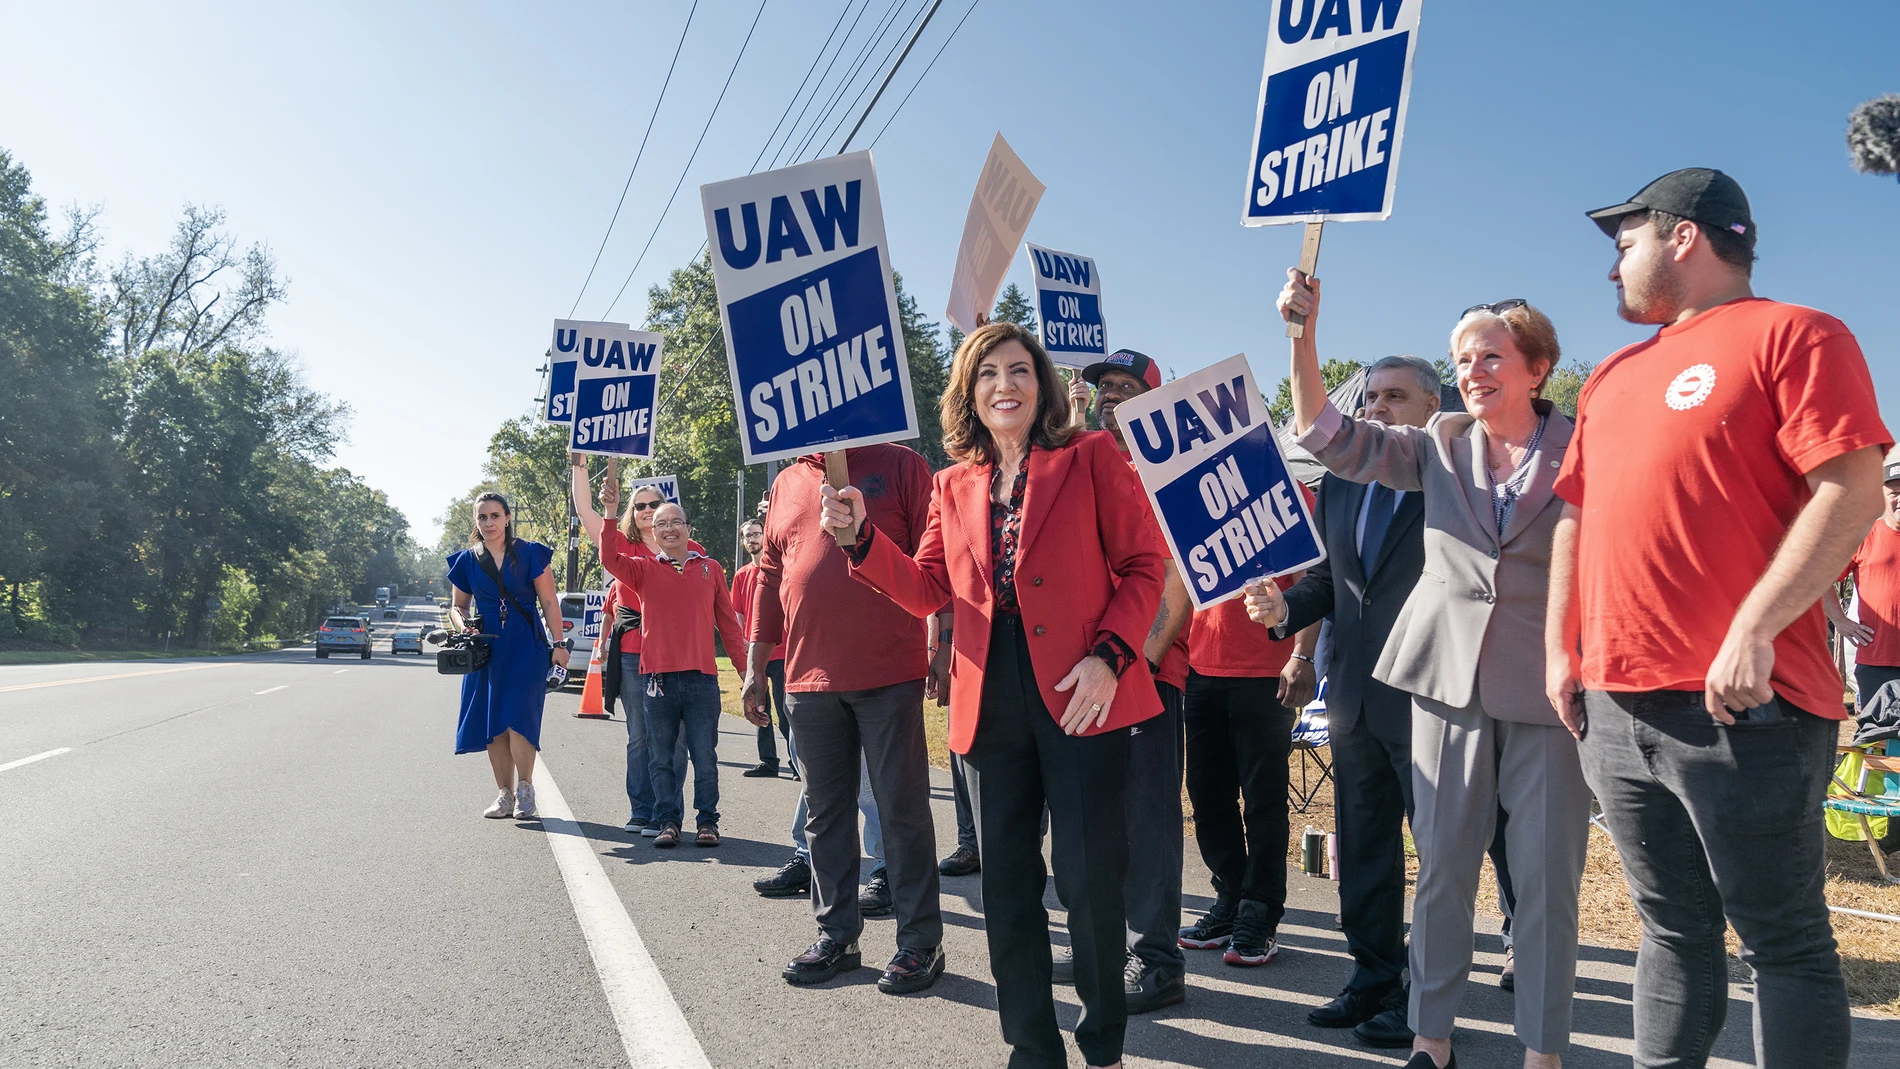 Economía/Motor.- El sindicato de trabajadores UAW y Ford alcanzan un acuerdo provisional para acabar con la huelga